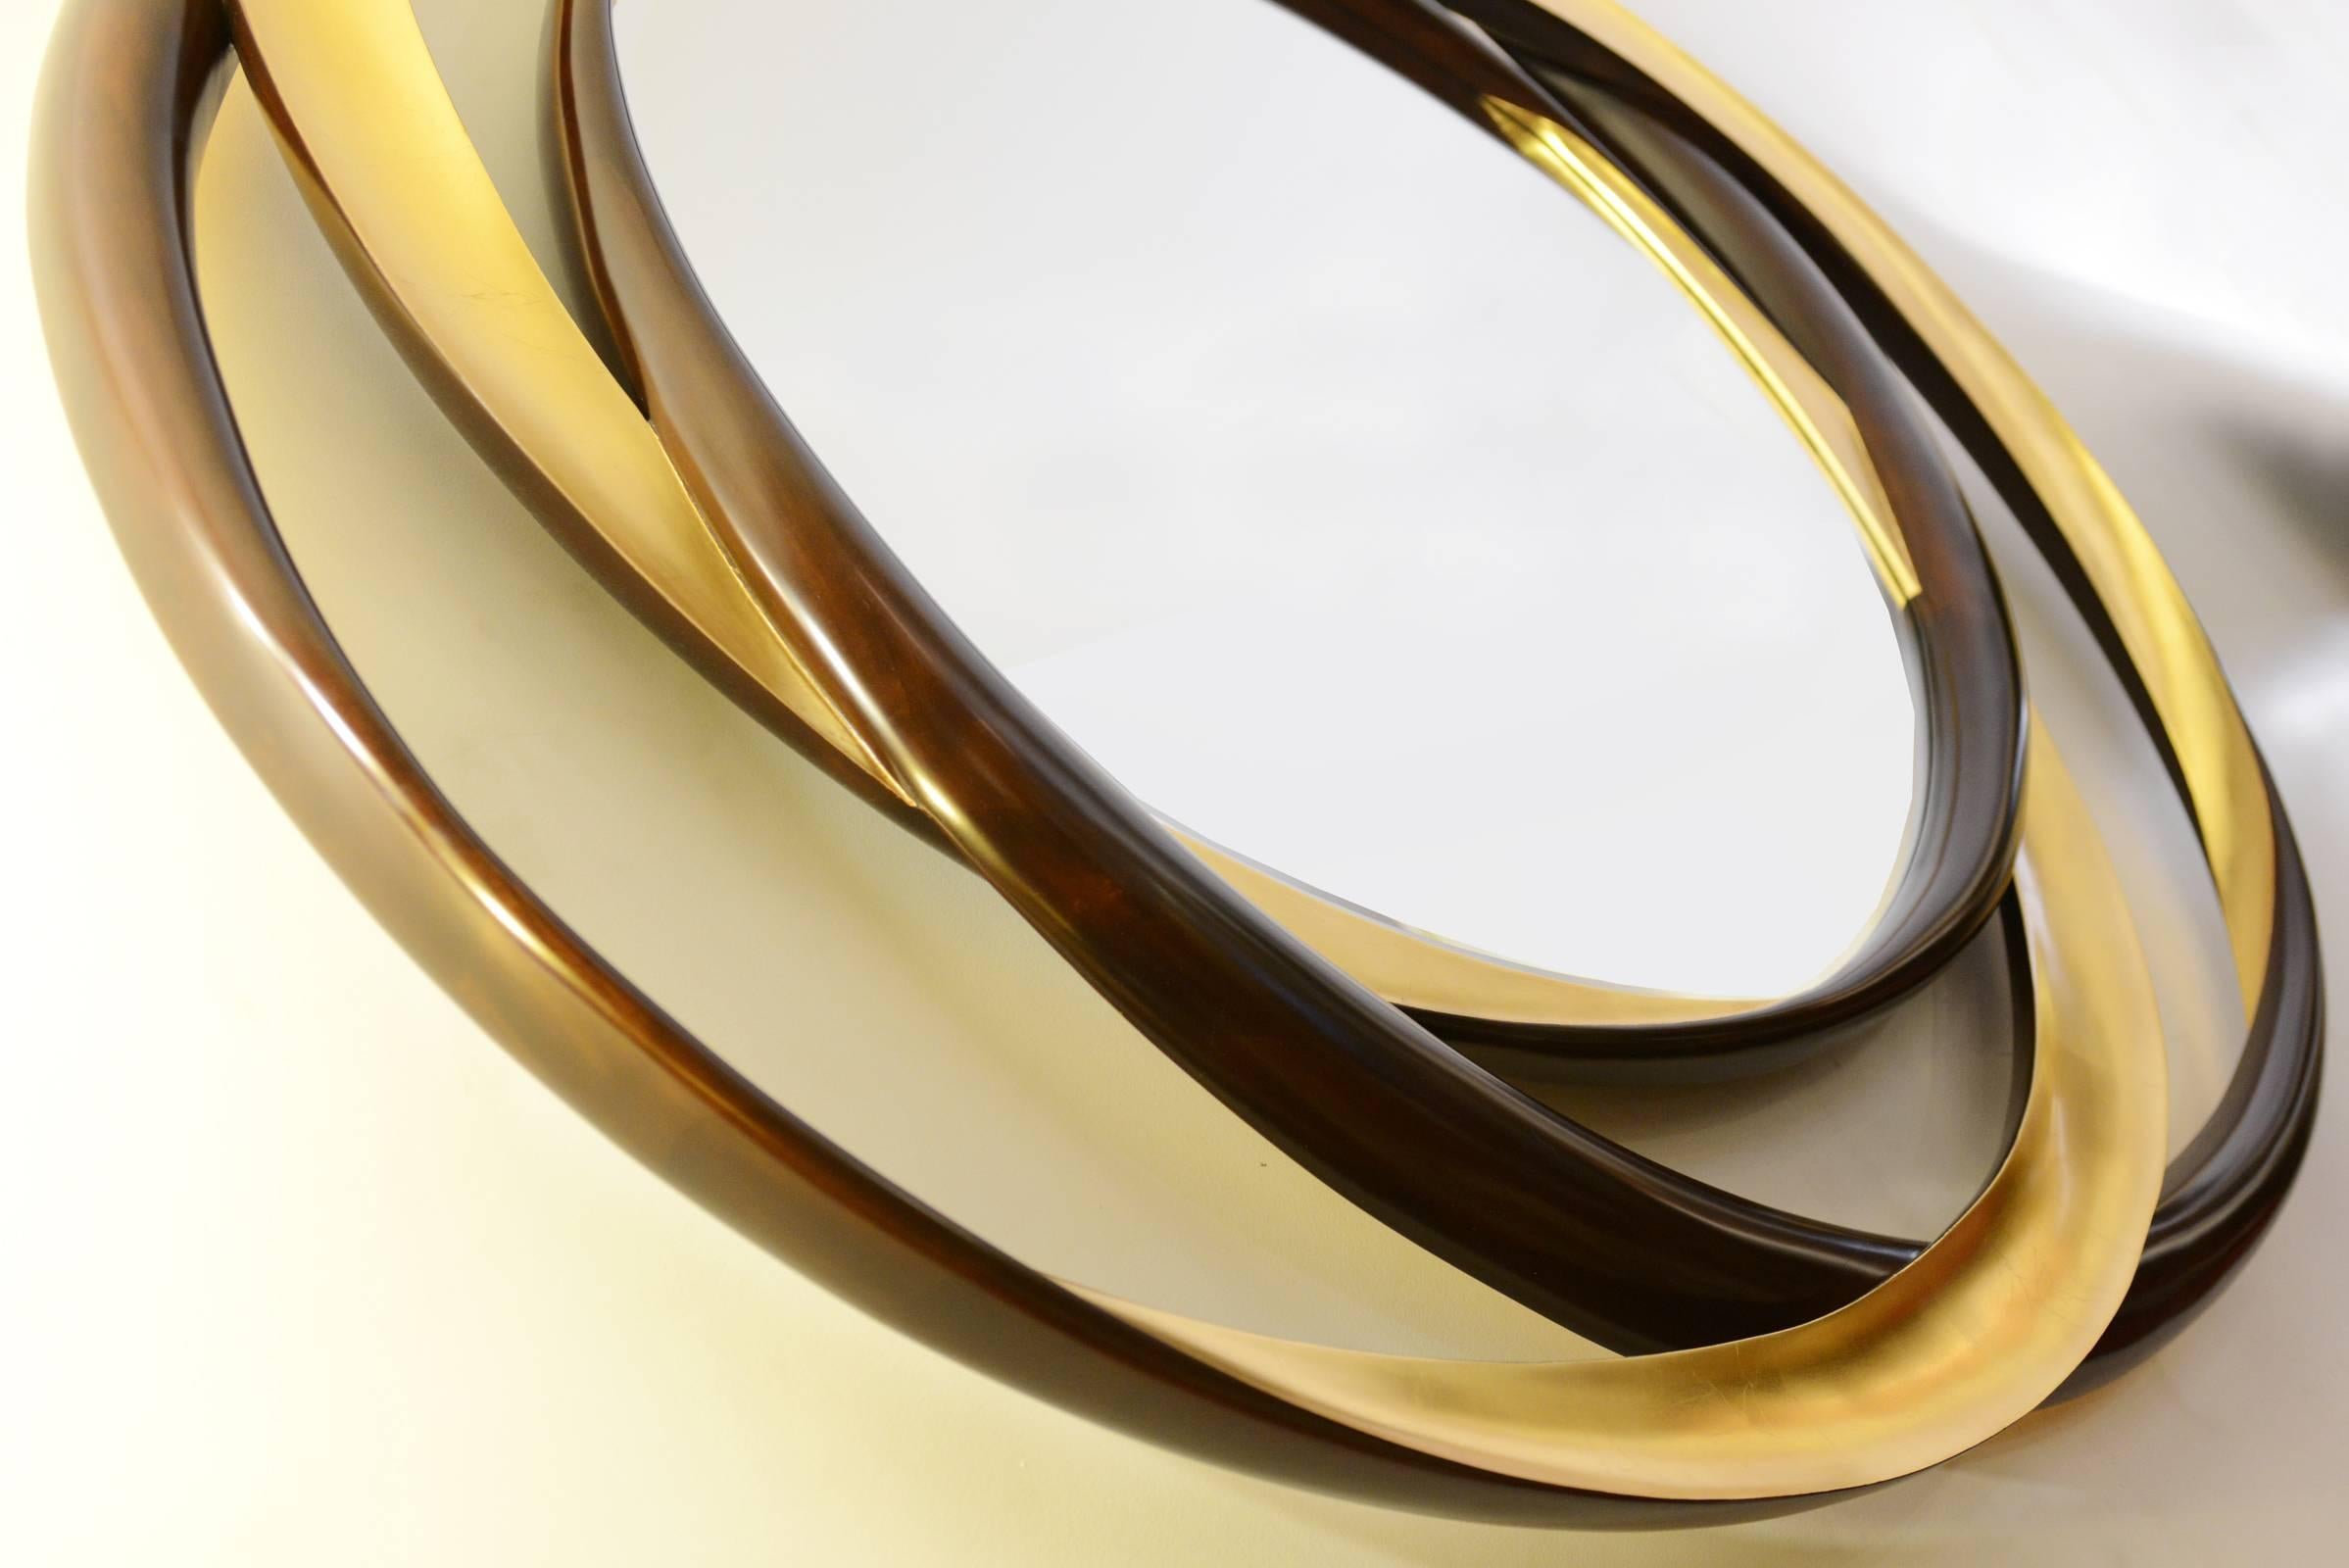 Miroir cercles d'or, miroir spirographique mélangeant trois cercles simples,
Torsades sculptées à la main, effet hypnotique. En bois d'acajou et finition dorée.
Ø145cm, prix : € 9950.00
Sur demande, fabriqué sur commande, également disponible en